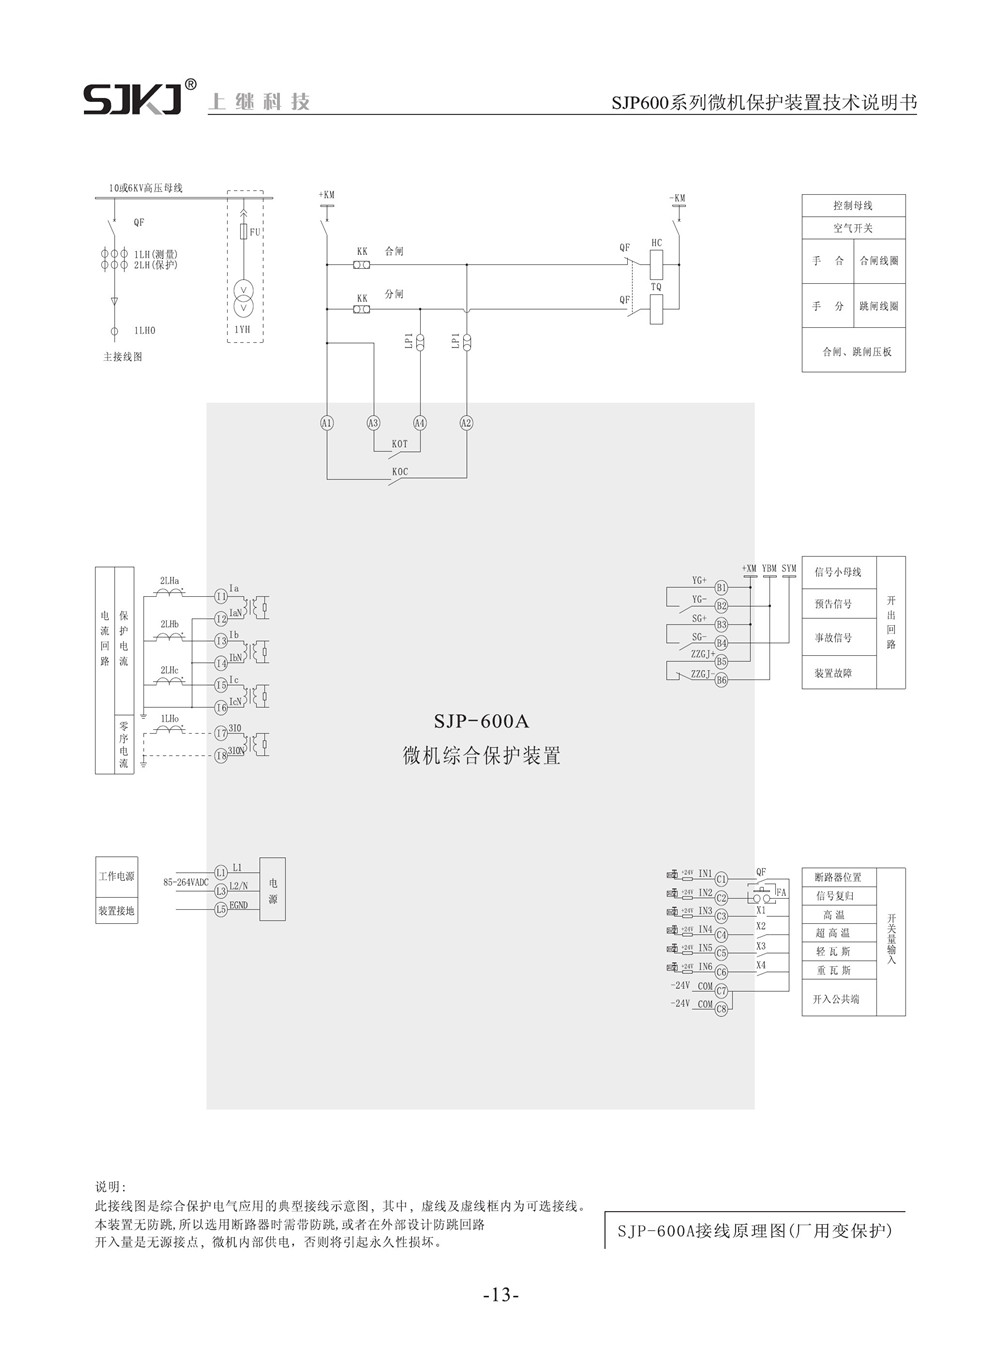 SJP-600A微机综合保护装置产品参数图片三